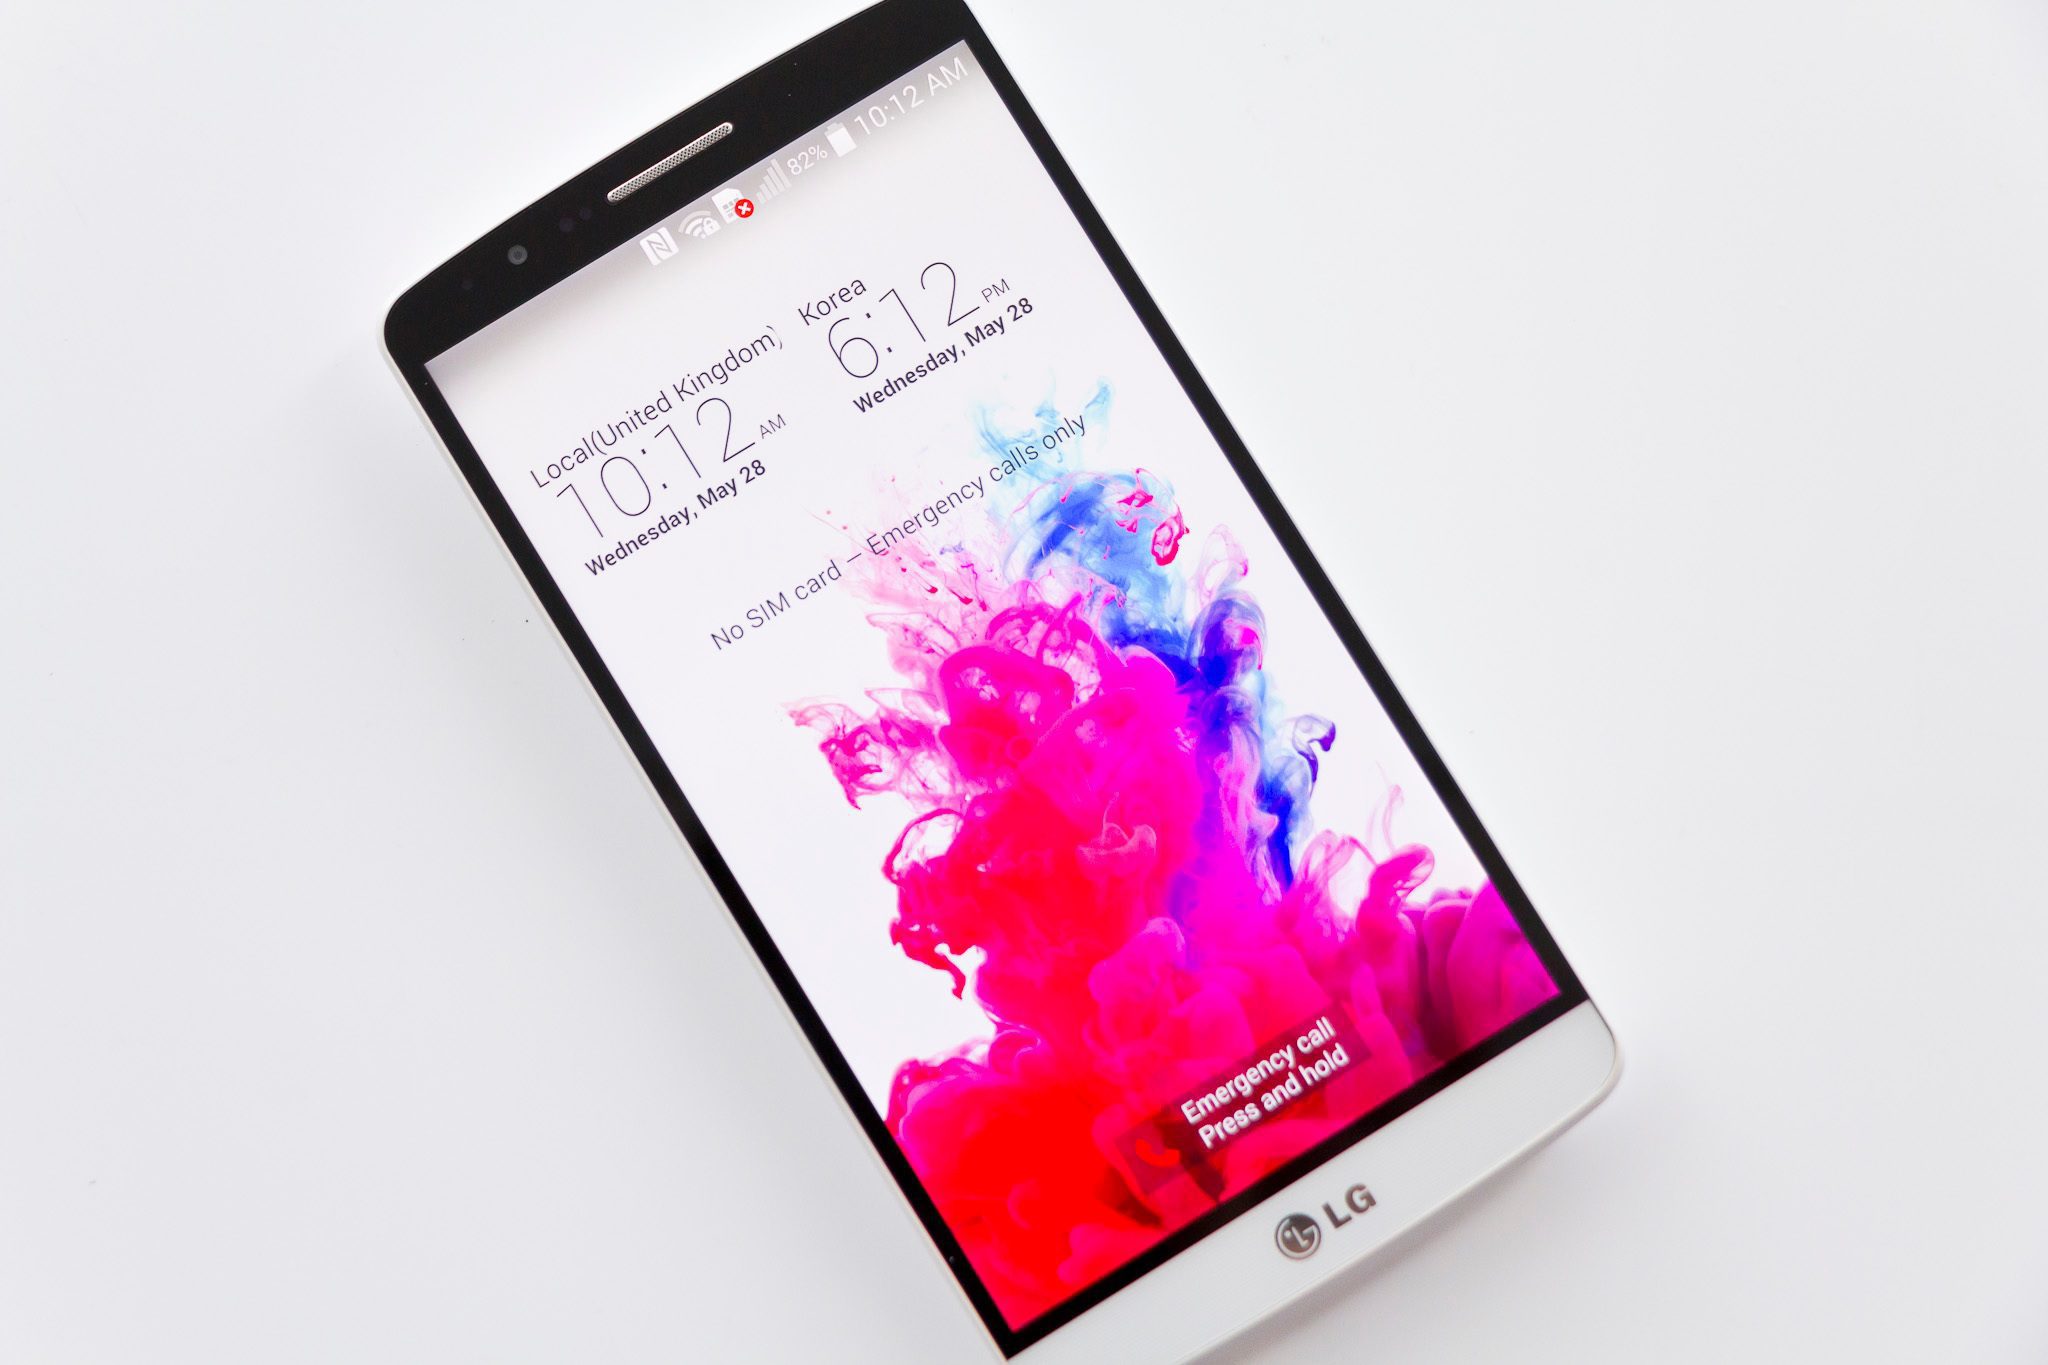 Tillgänglighetsfunktioner på LG G3